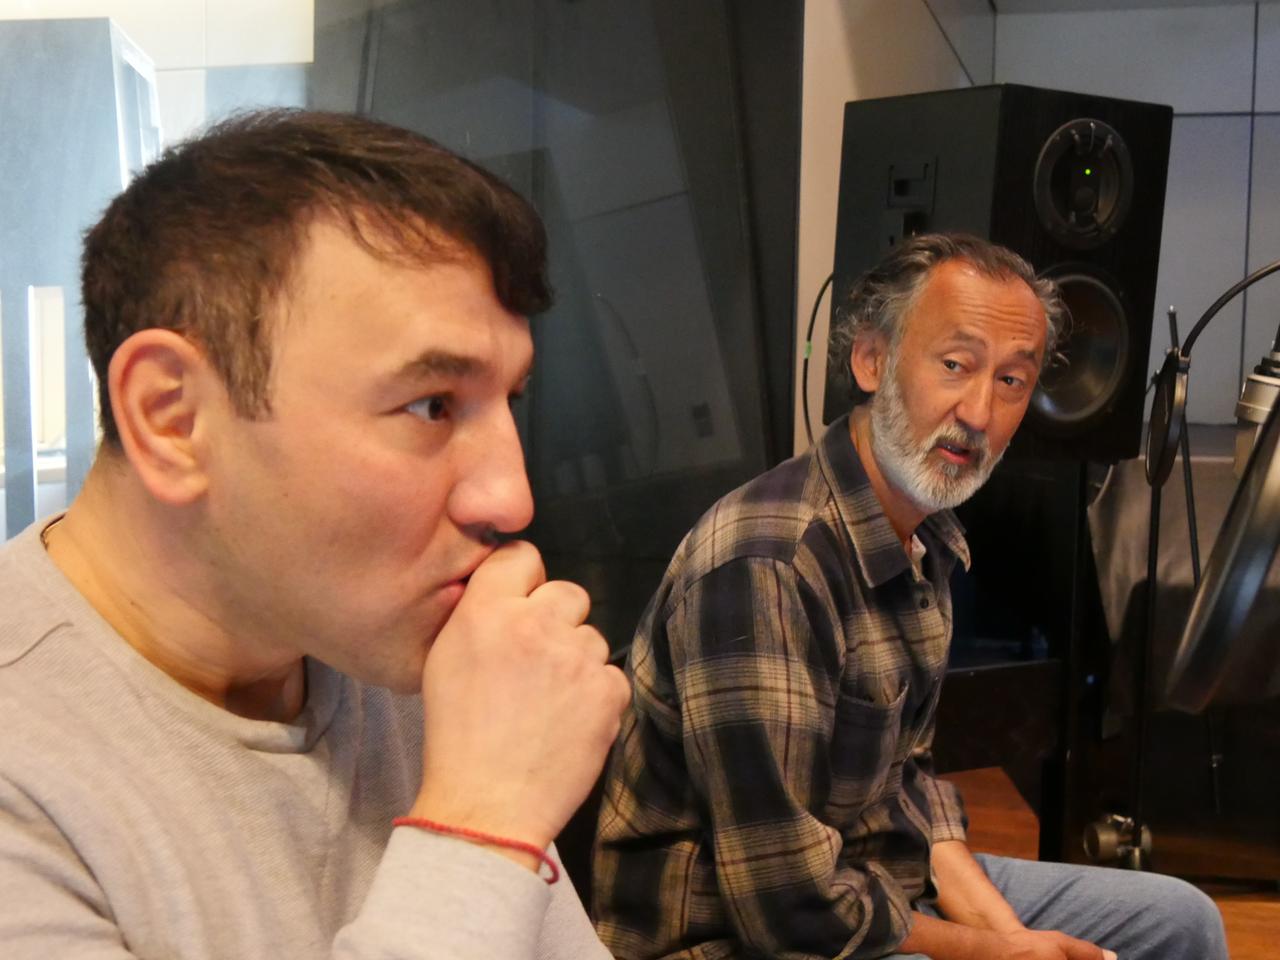 Die Schauspieler Taner Şahintürk und Ercan Durmaz bei den Aufnahmen für das Hörspiel "Zärtlichkeiten".